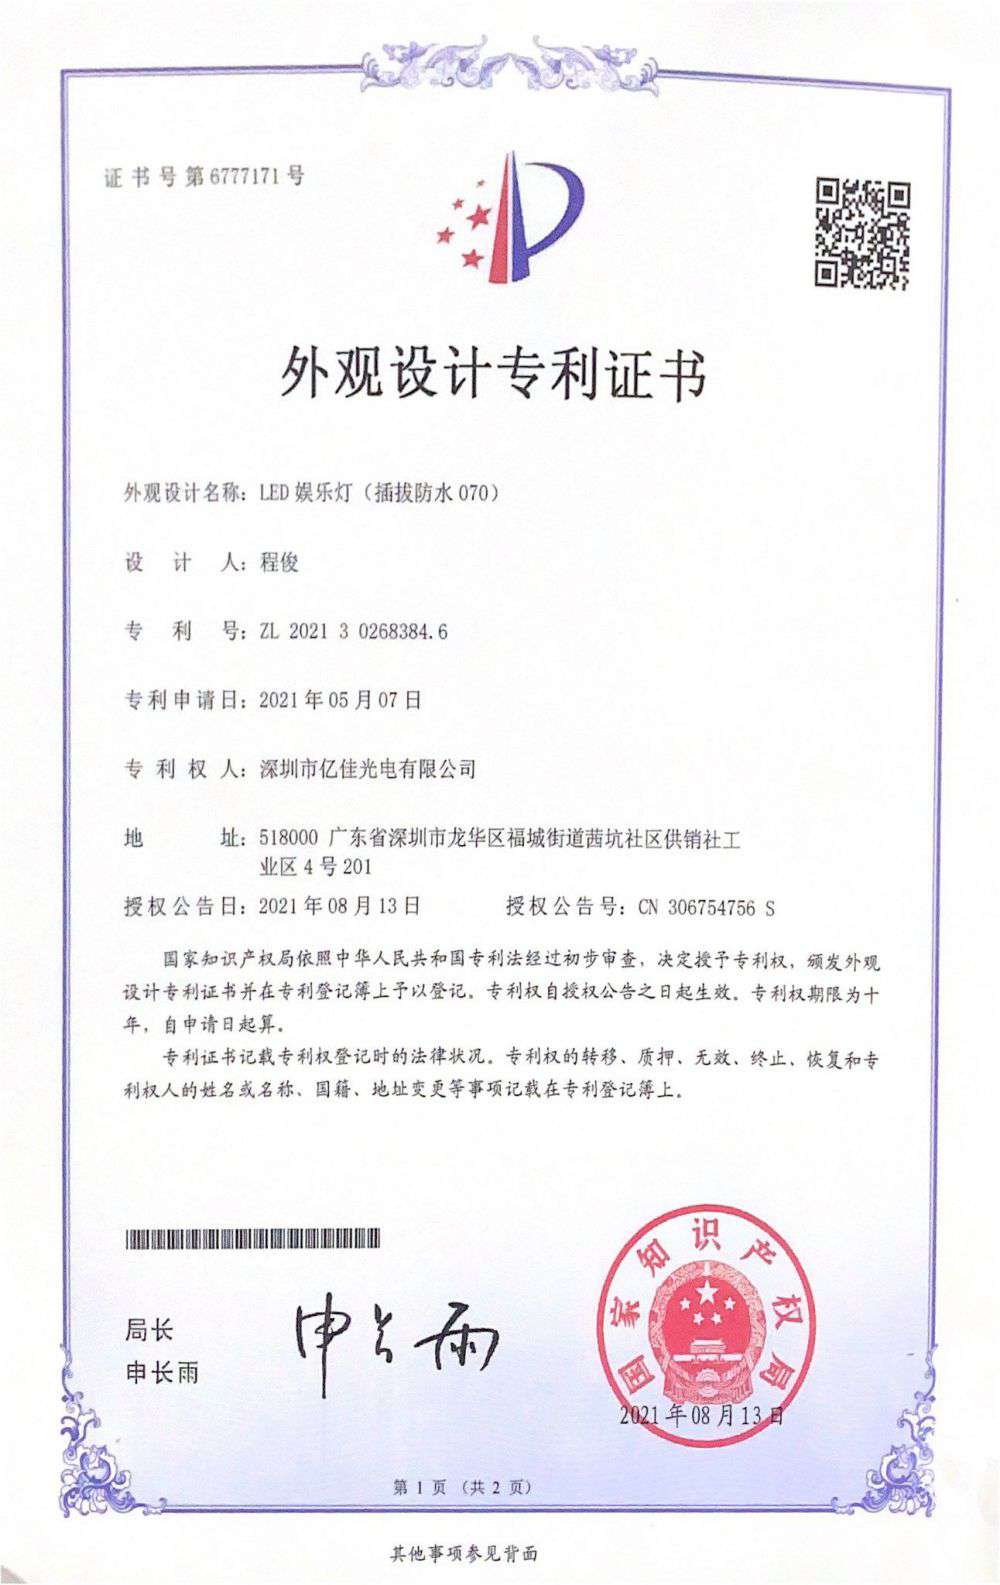 深圳市亿佳光电有限公司LED娱乐灯070获得外观设计专利证书